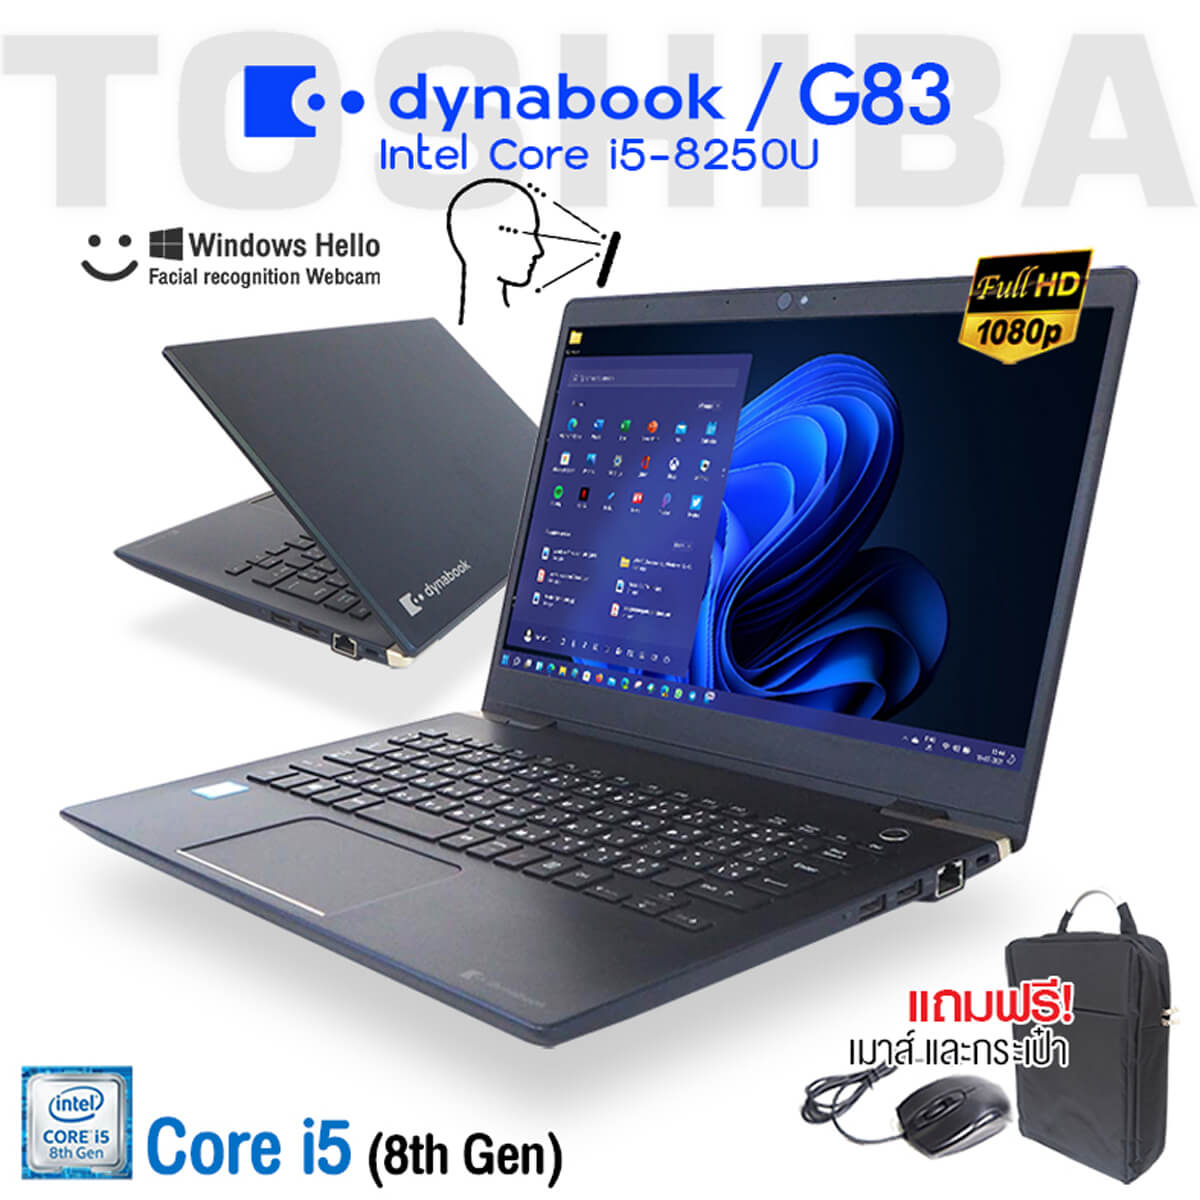 Toshiba Dynabook G83 | Intel Core i5 | 8GB | 256GB SSD M.2 | 13.3 inch